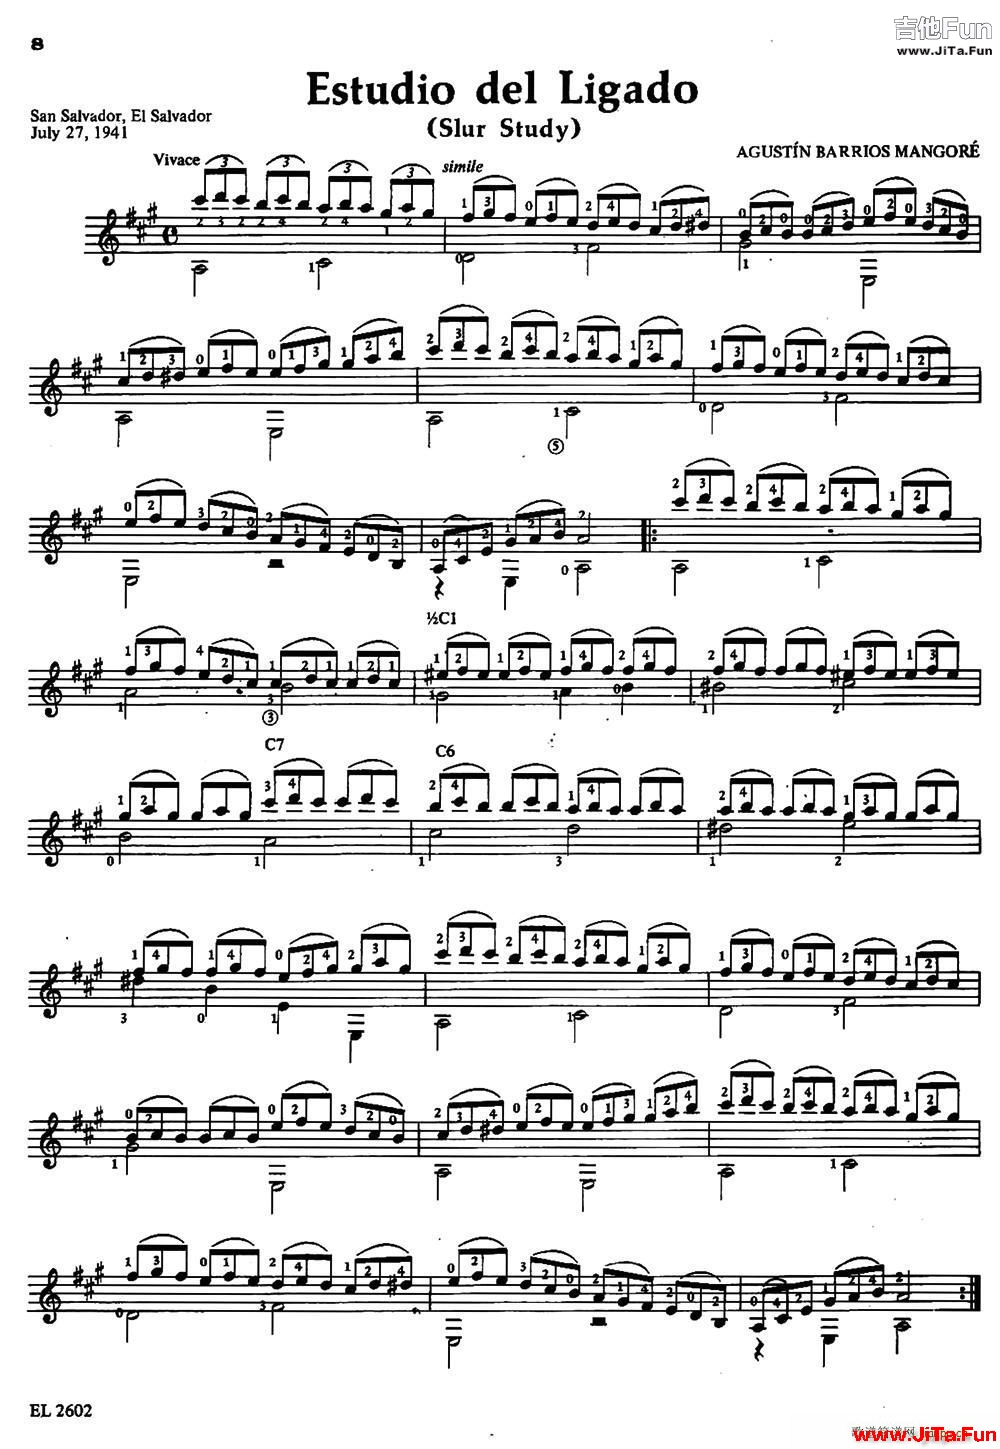 Estudio del Ligado 古典吉他(吉他譜)1